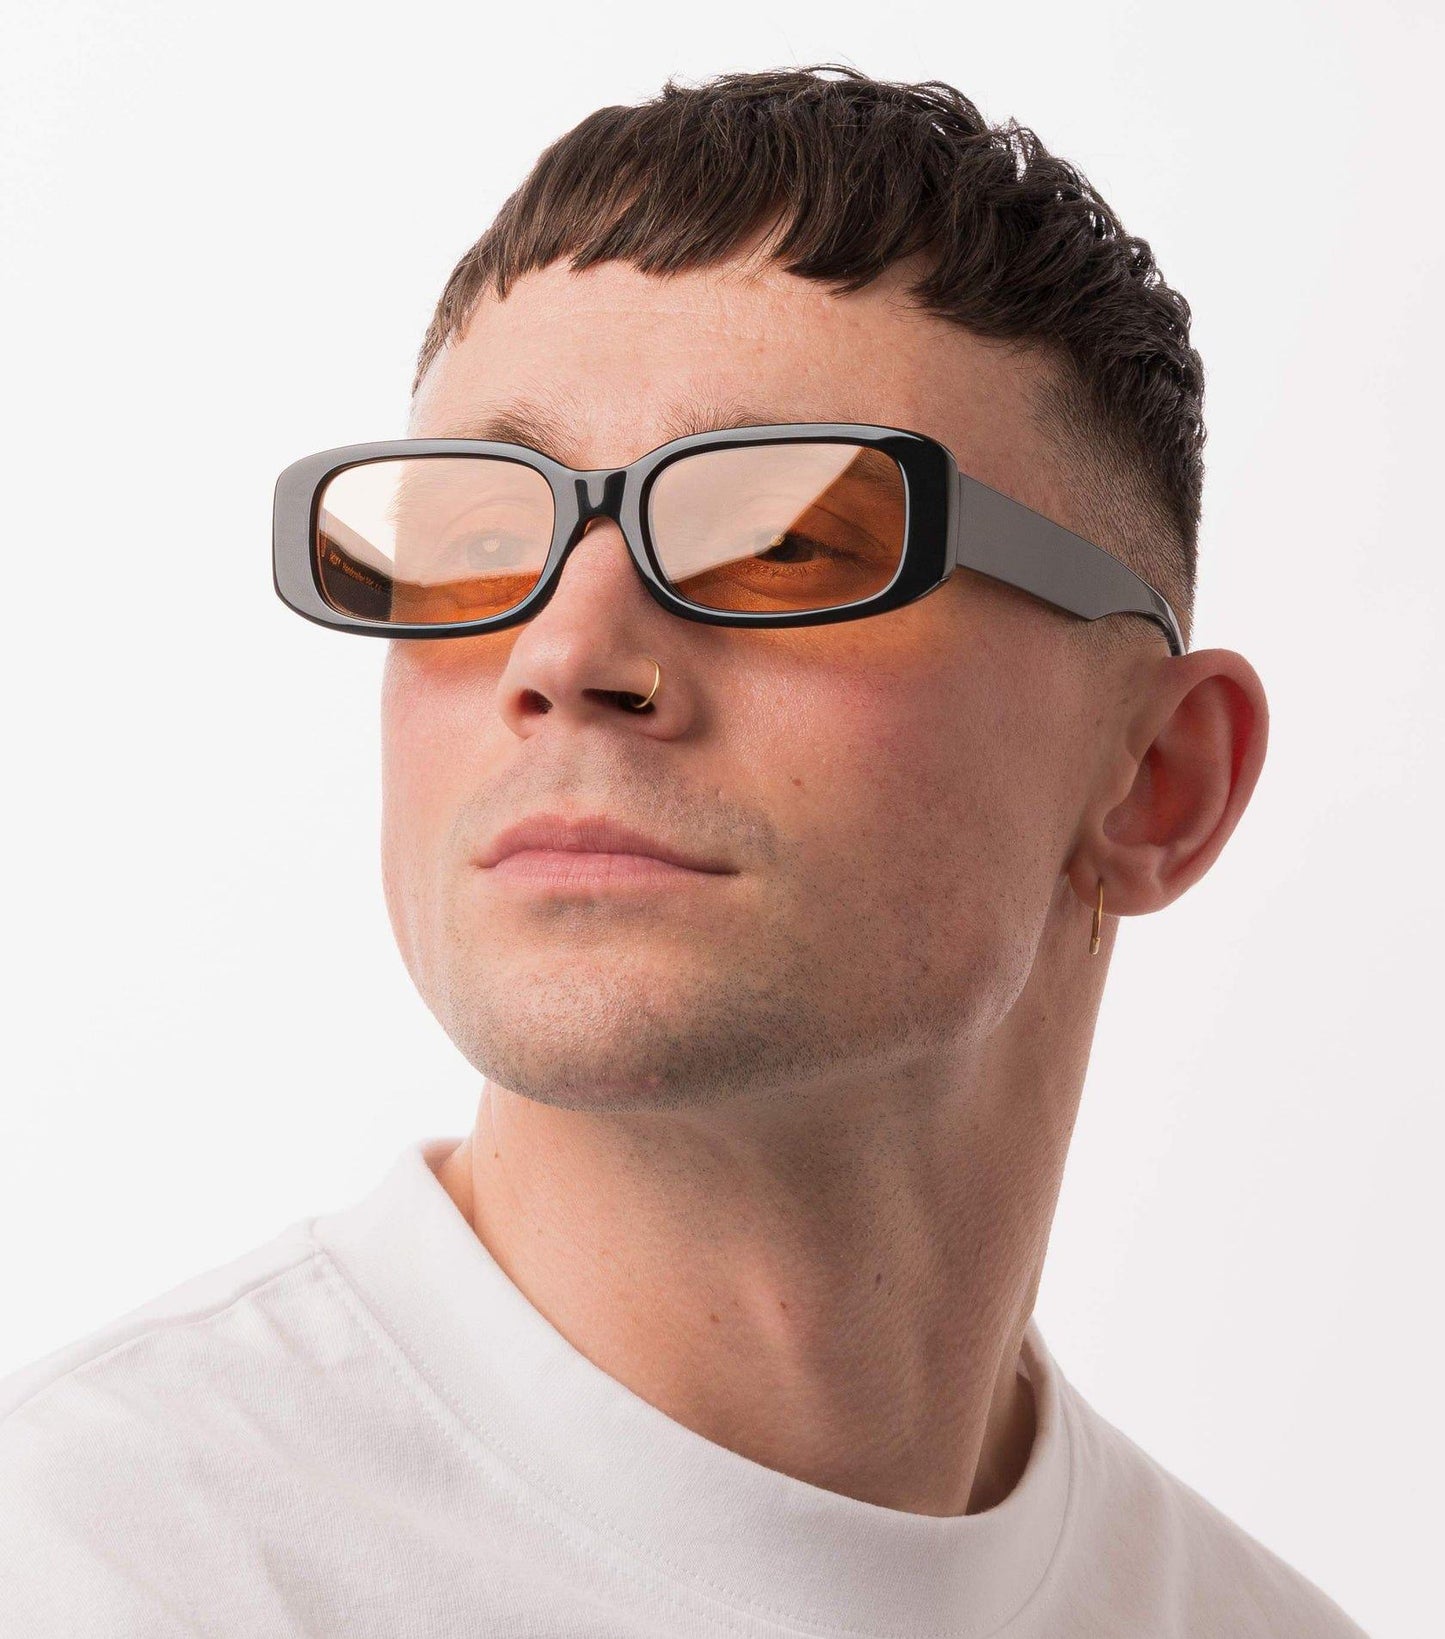 ROXIE, Rectangular sunglasses for men and women orange lens UV400 protection